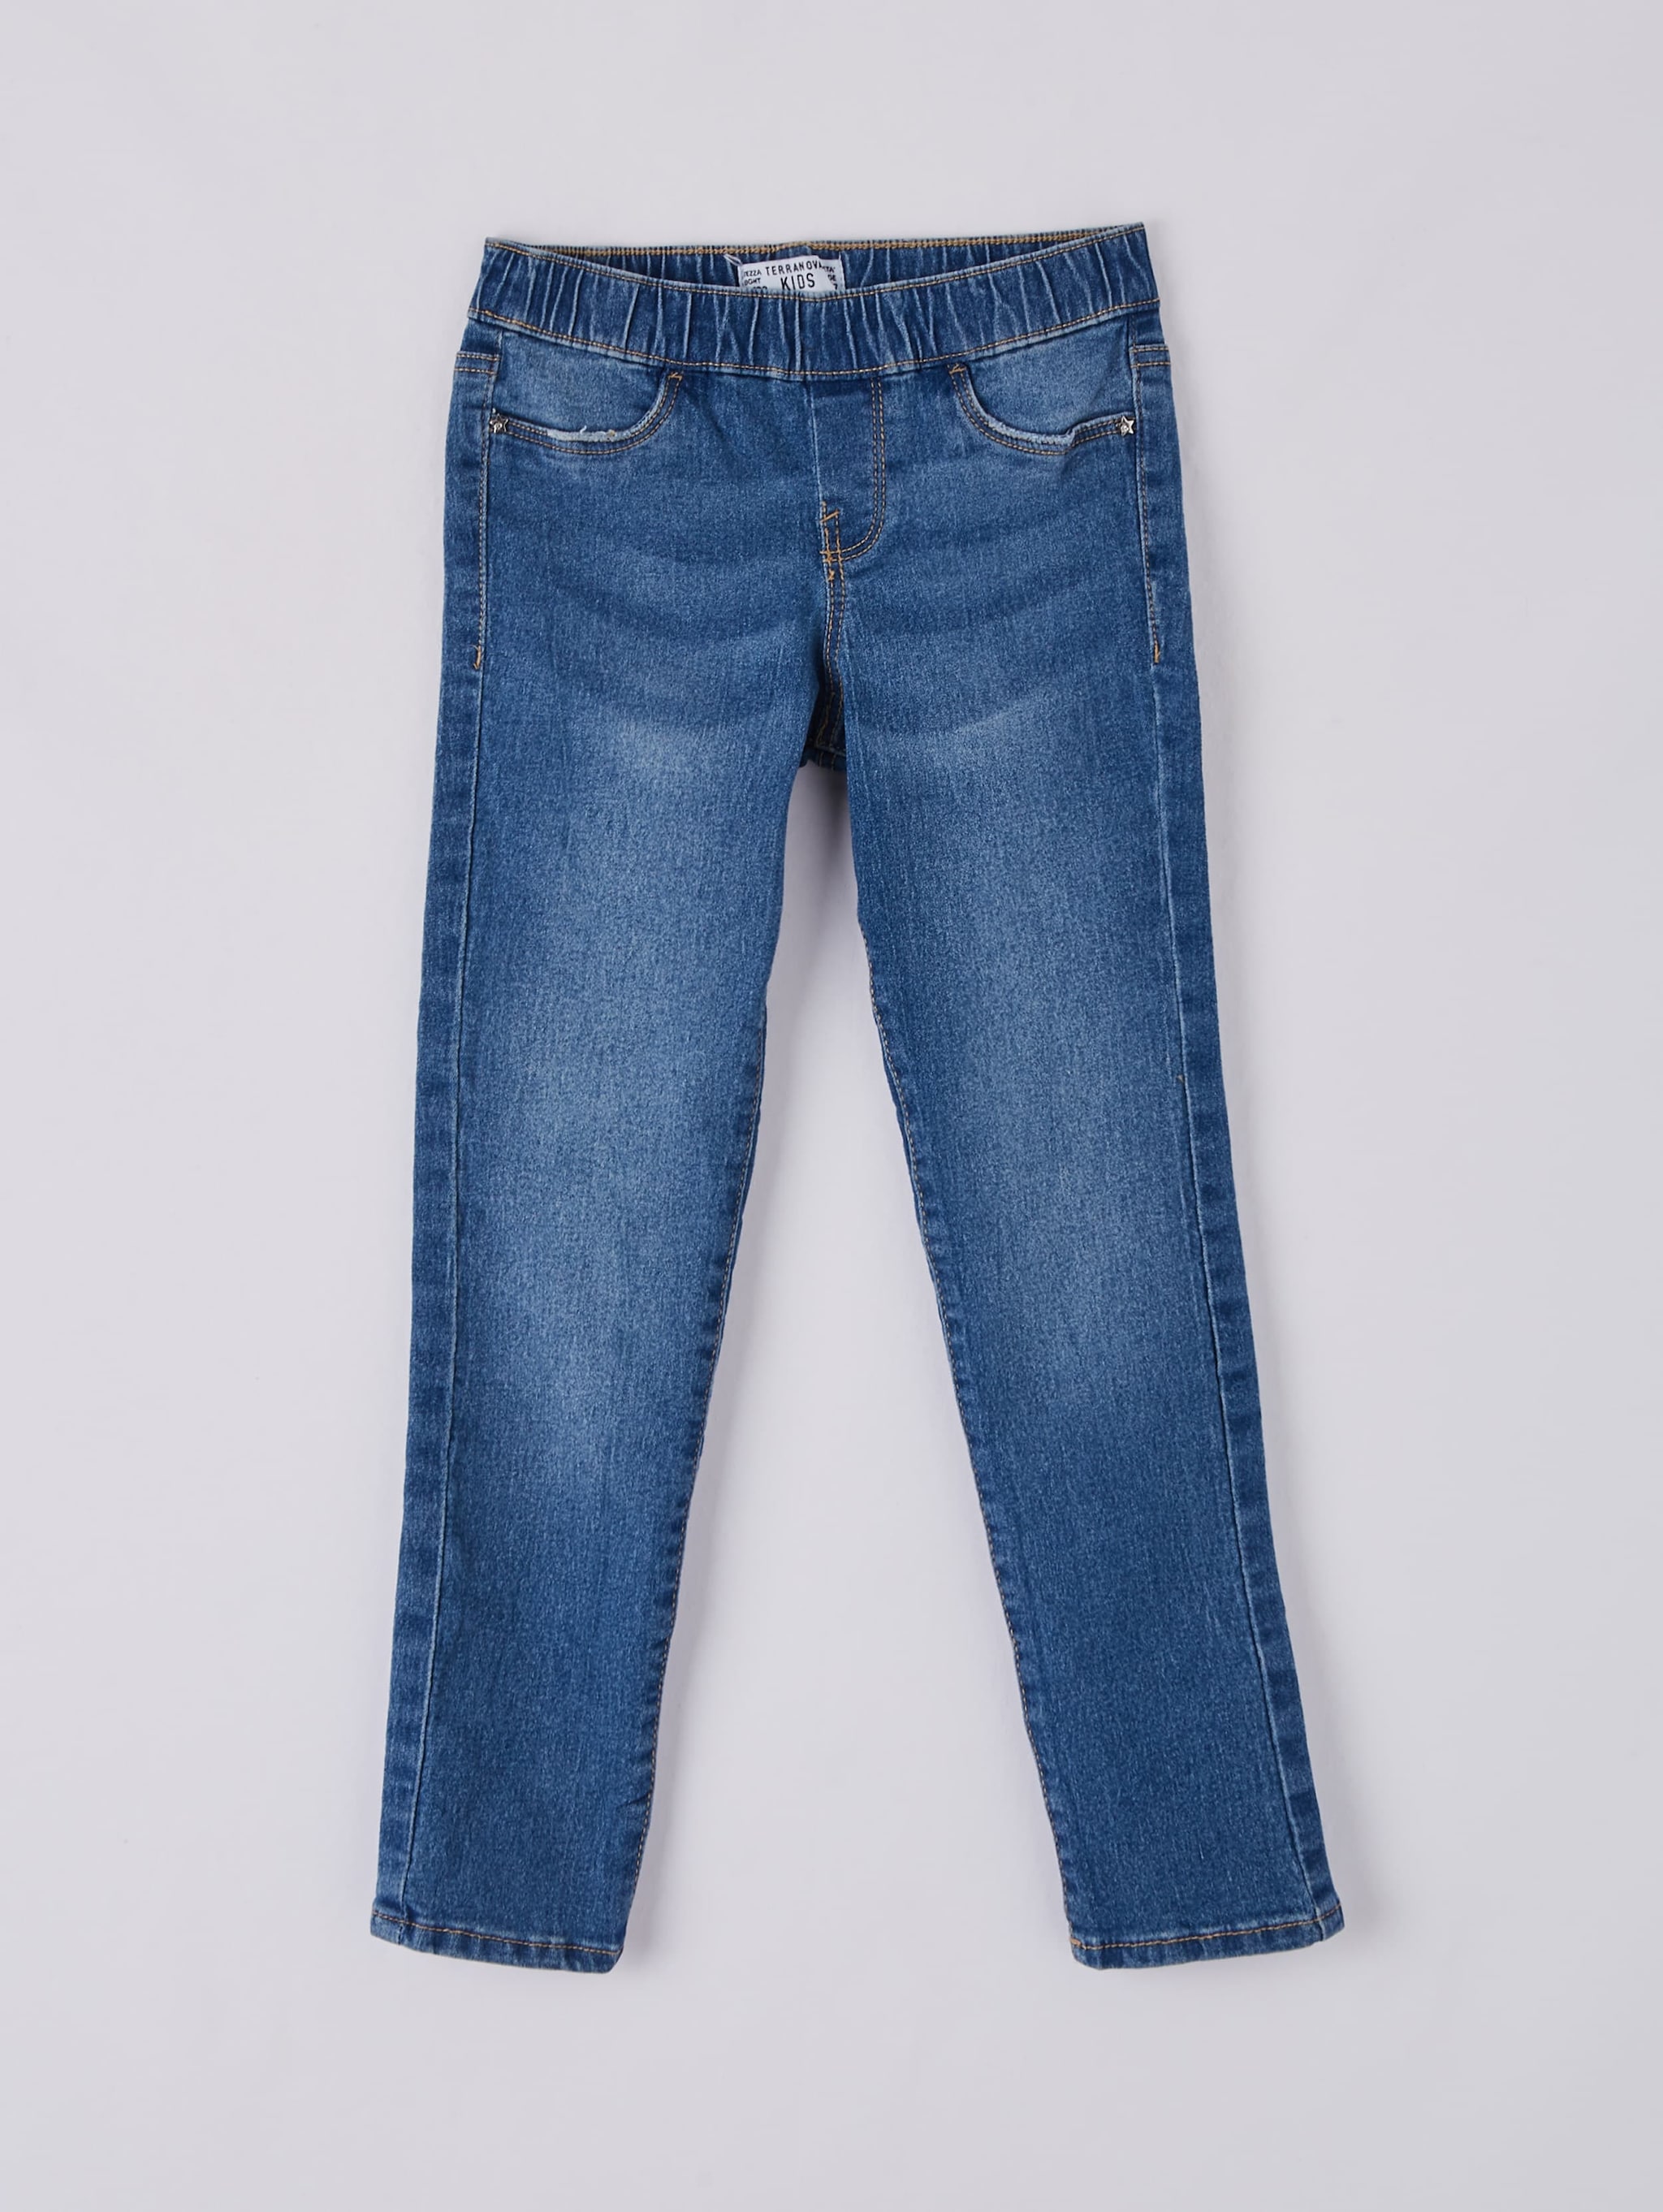 size 6 short jeans